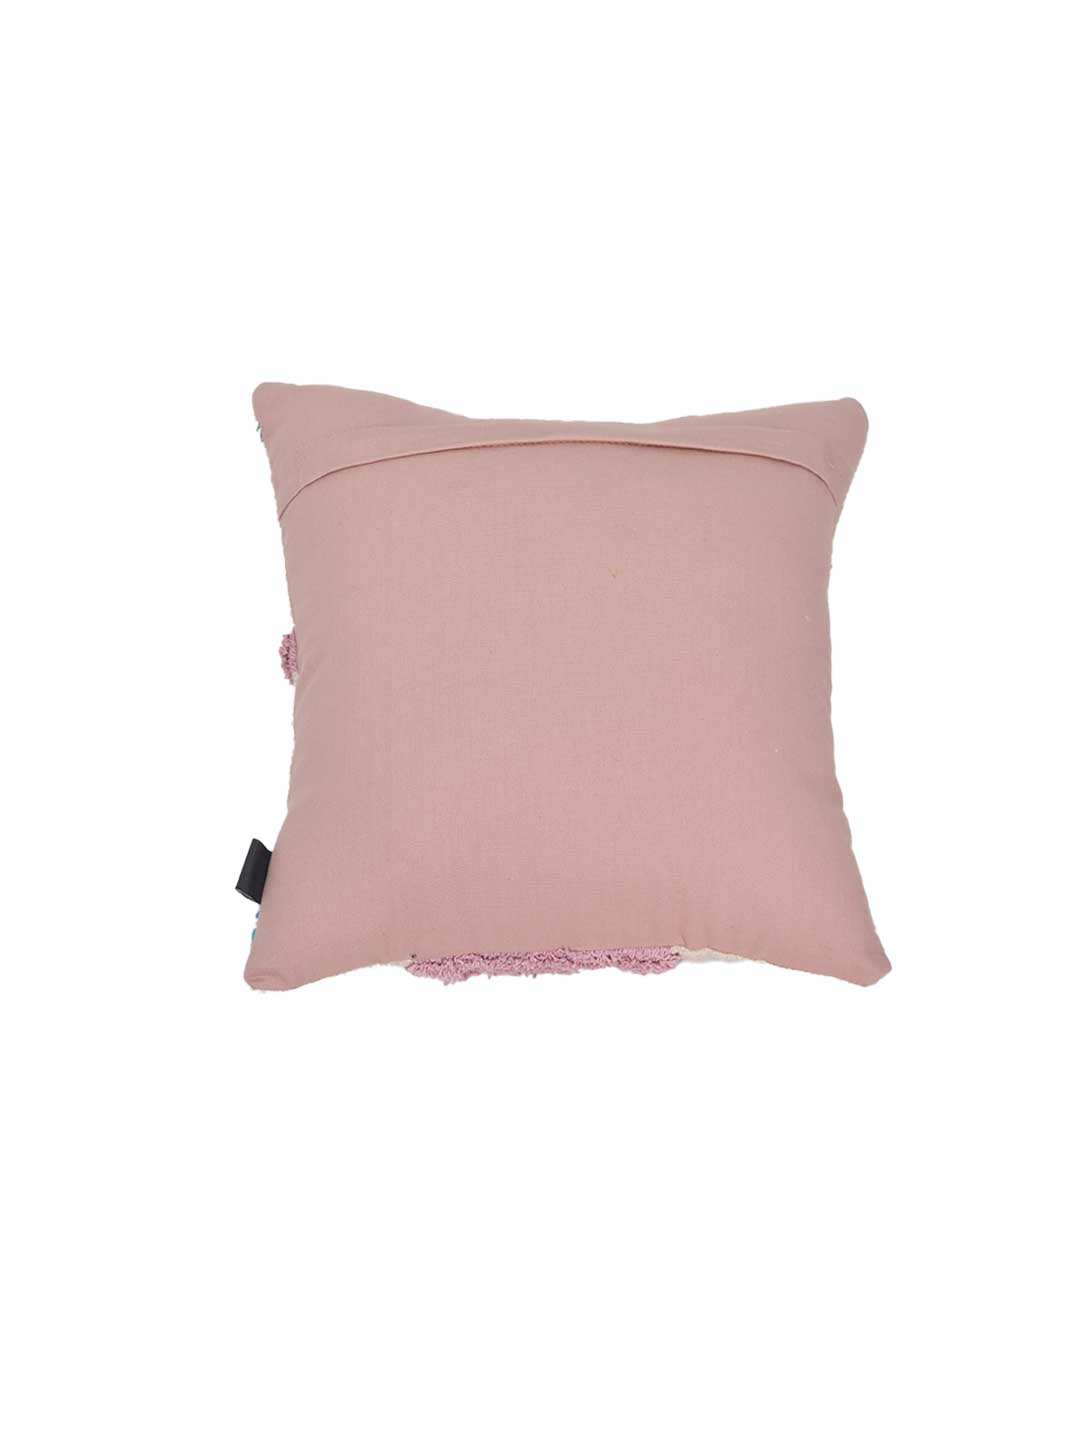 Blanc9 Abstract Geometric Cushion Cushion Cover